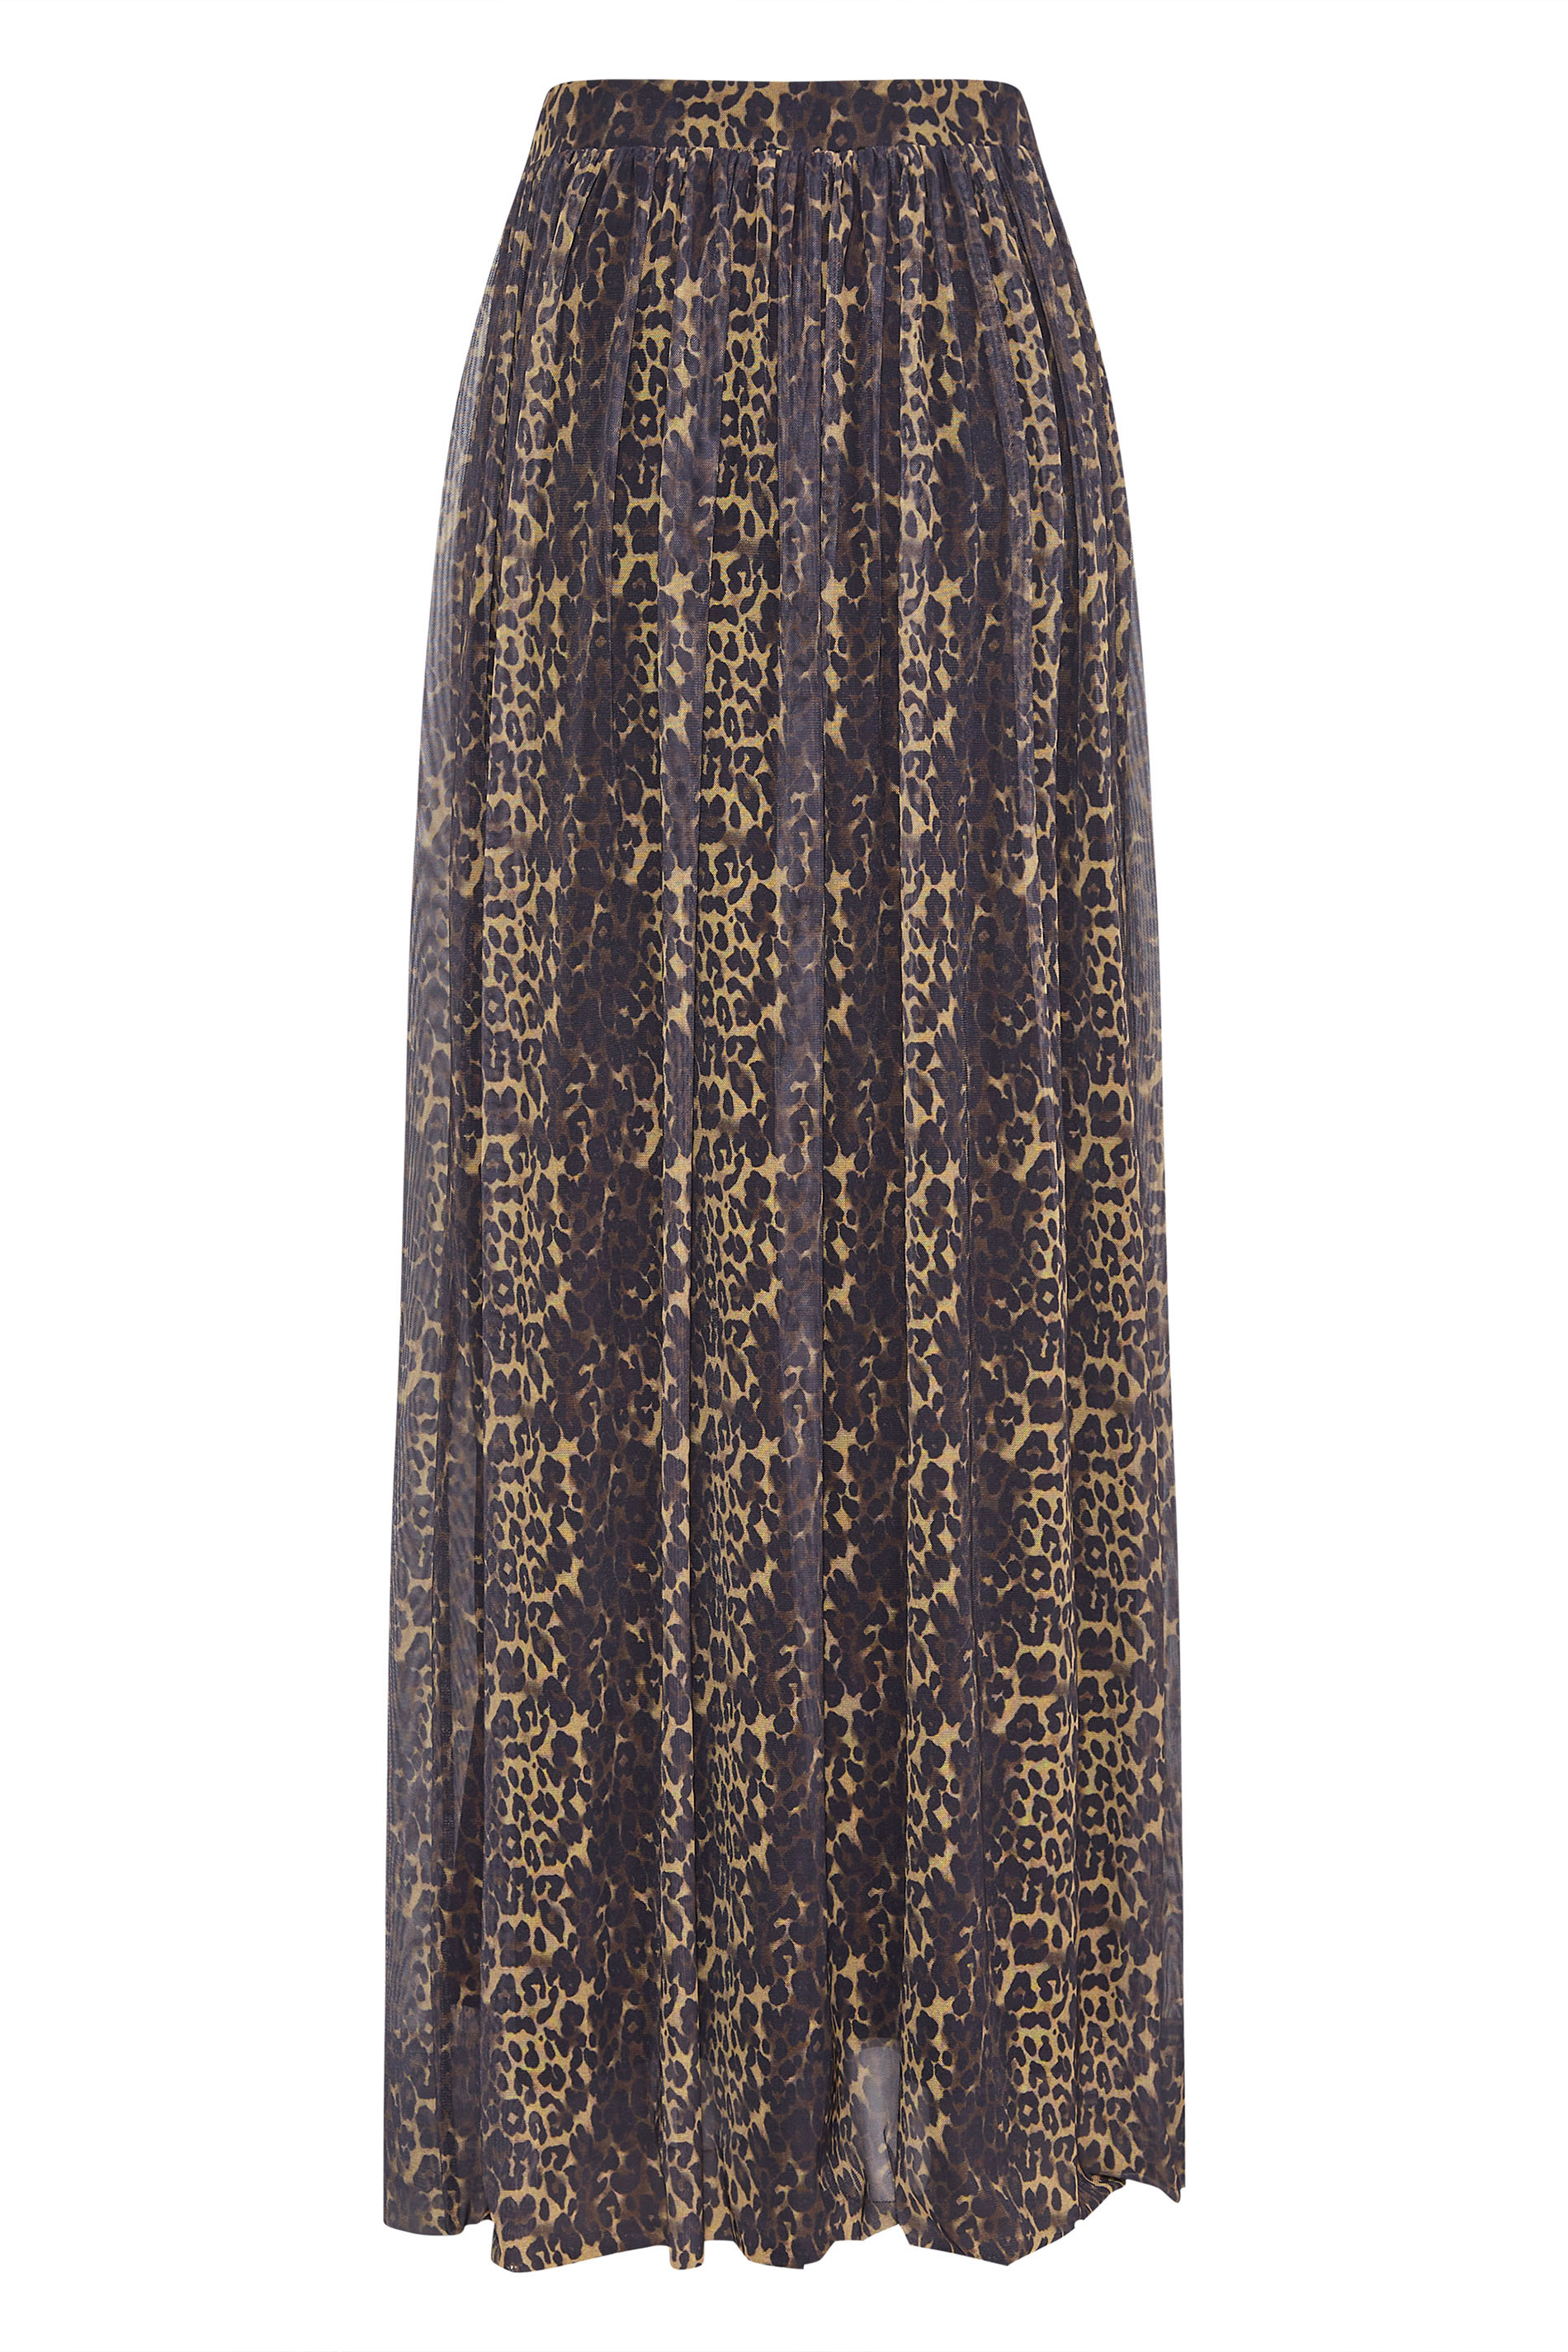 LTS Tall Women's Brown Leopard Print Mesh Maxi Skirt | Long Tall Sally